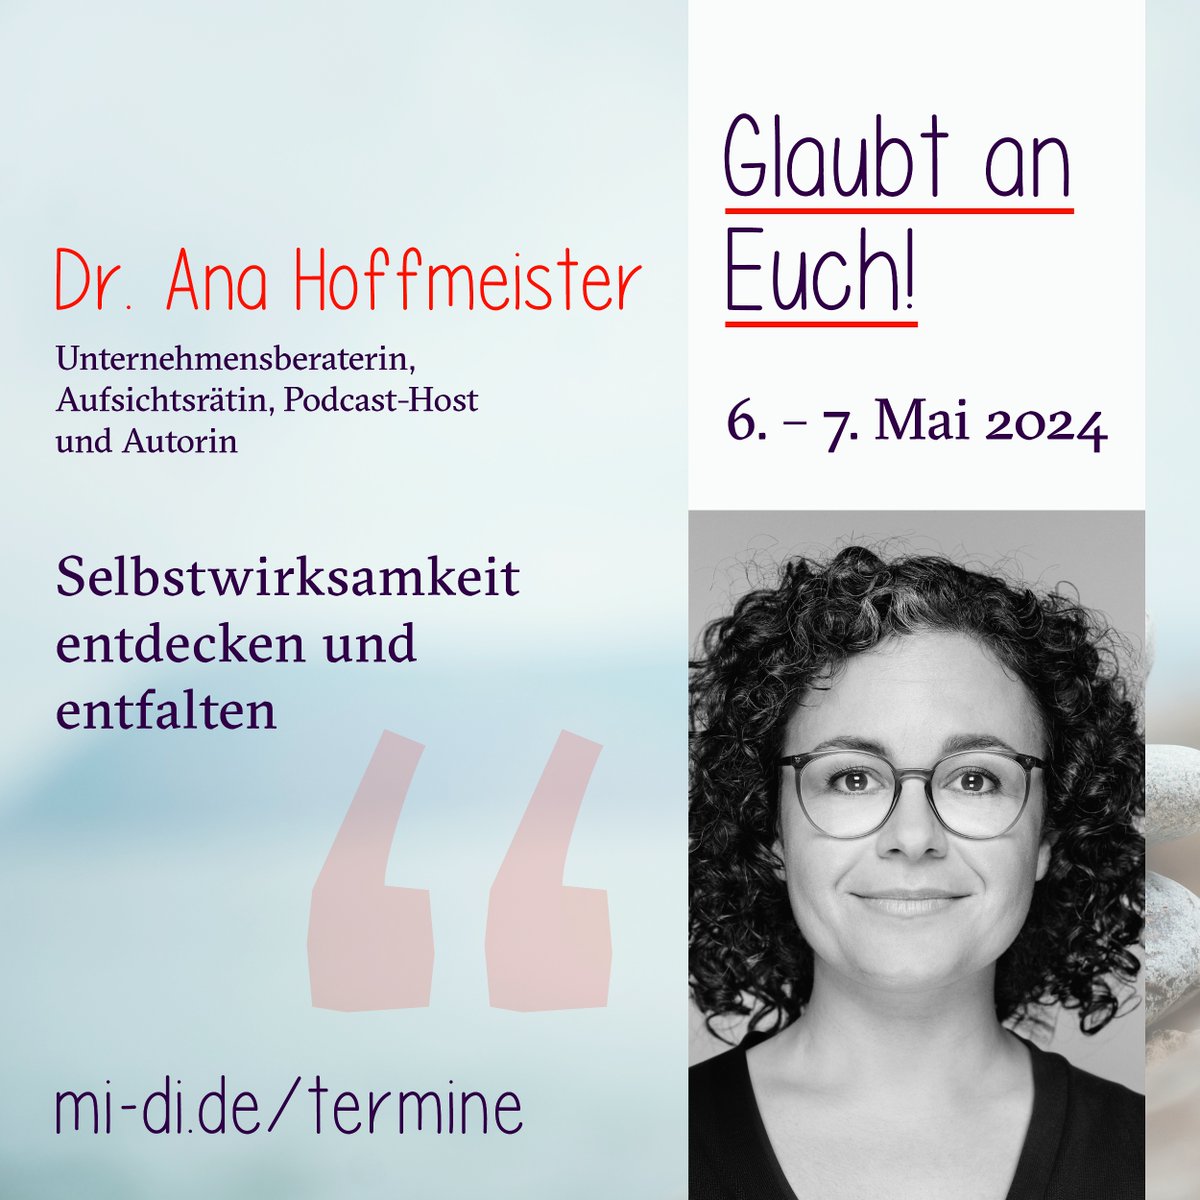 Dr. Ana Hoffmeister ist Unternehmensberaterin, Podcasterin (FutureFamily – Generation #Familie & #Beruf) und unsere Keynote-Speakerin auf der #miditagung zum Thema #Selbstwirksamkeit am 6./7. Mai. #Vereinbarkeit mi-di.de/termine/glaubt… 👋